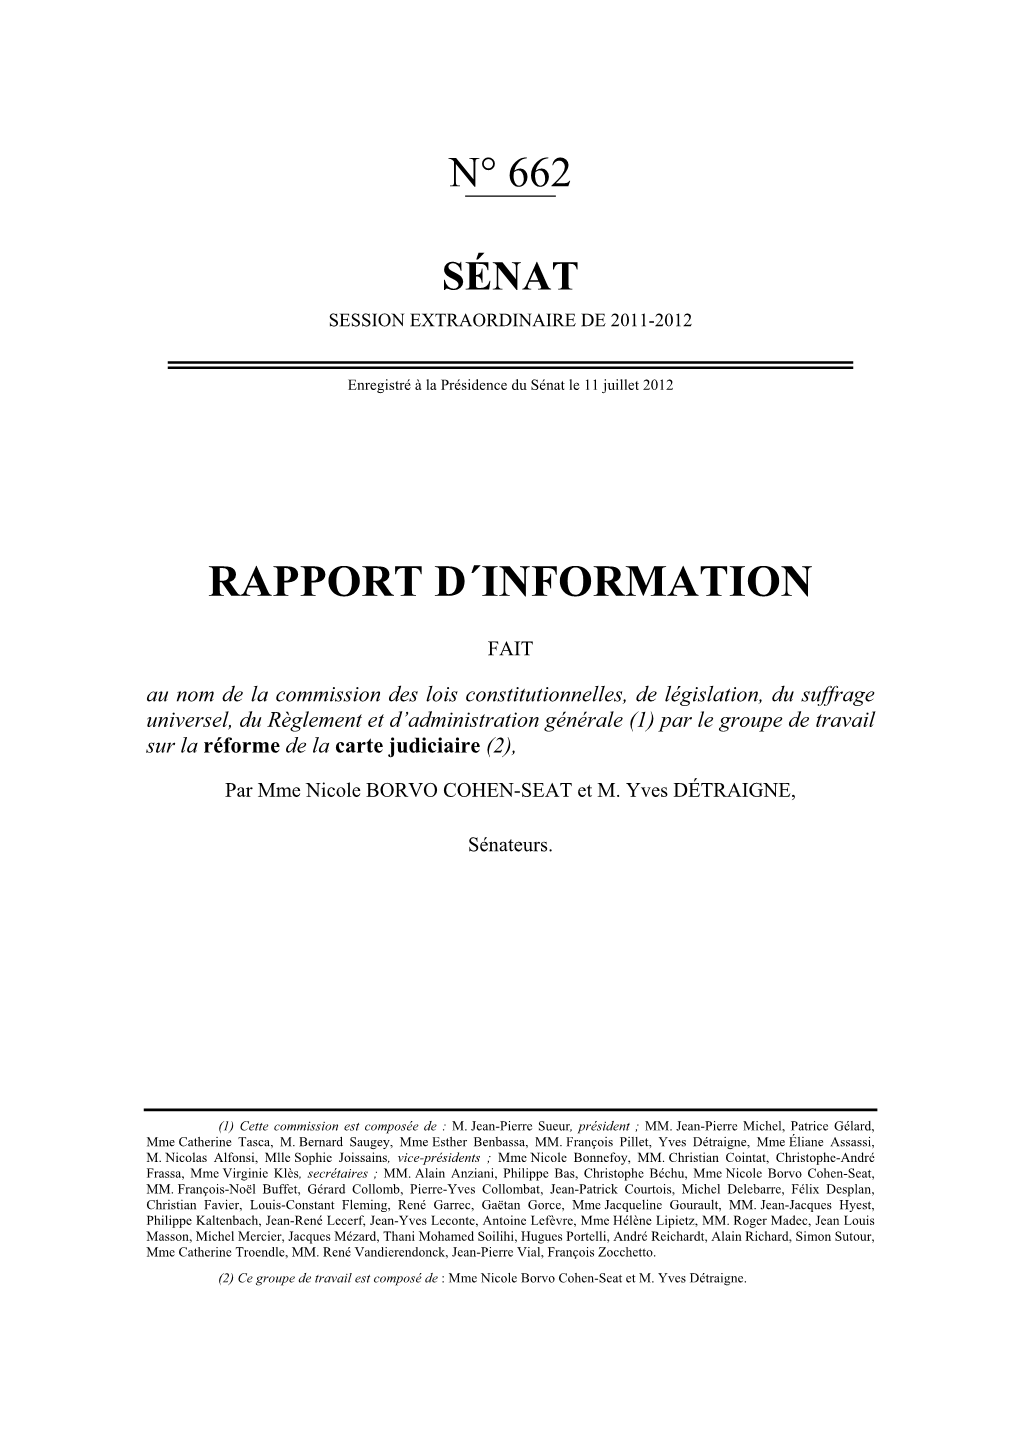 Rapport D'information Sur La Réforme De La Carte Judiciaire